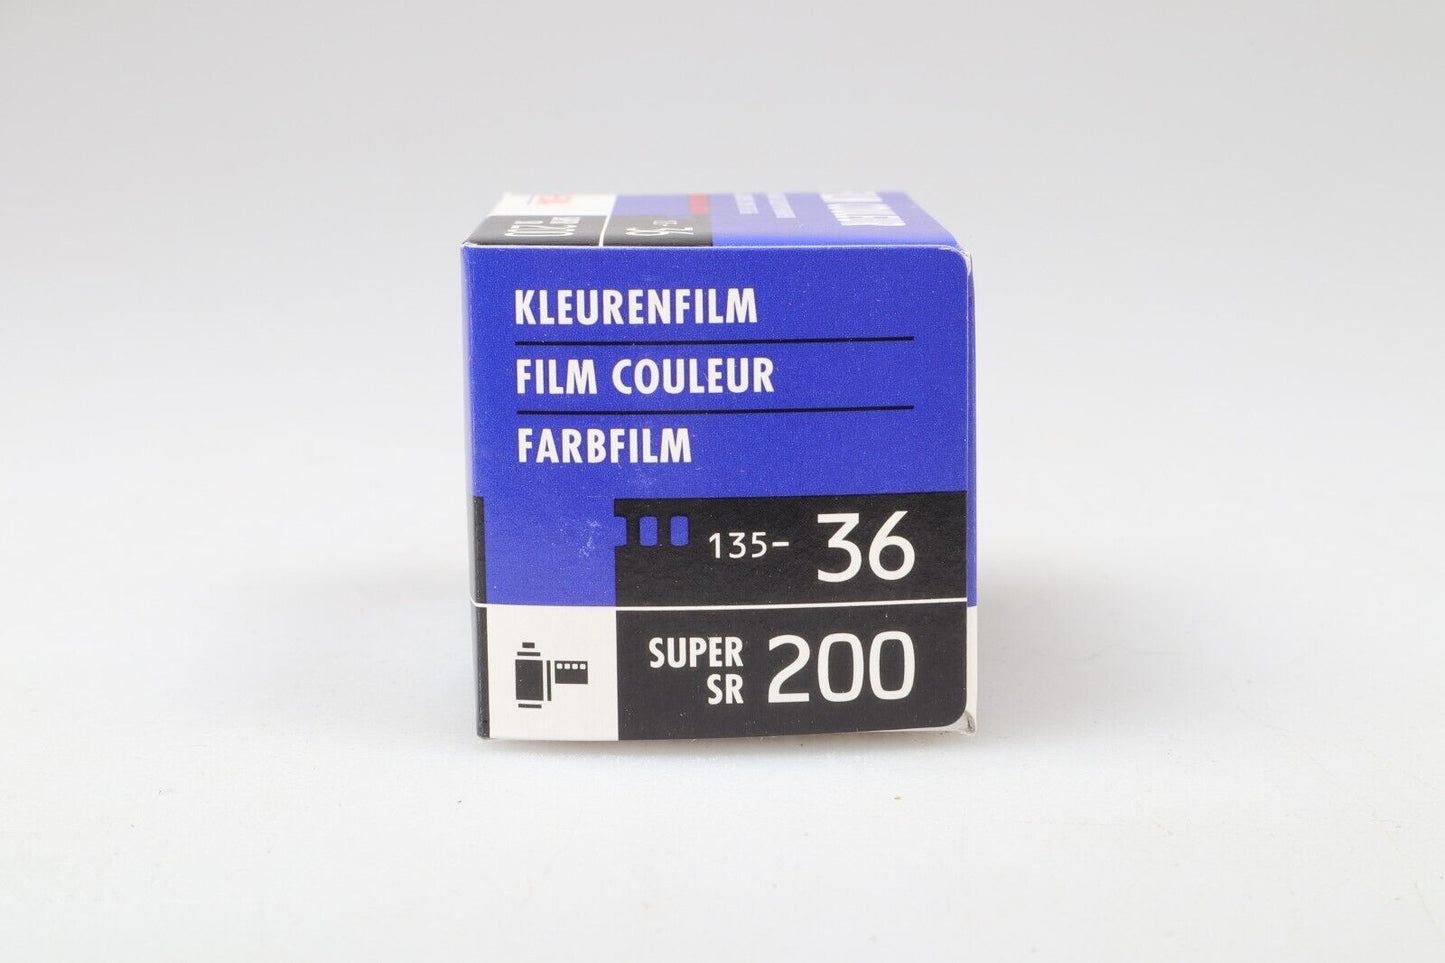 Hema Kleurenfilm | 35mm Roll of Film ISO 200 - Expired